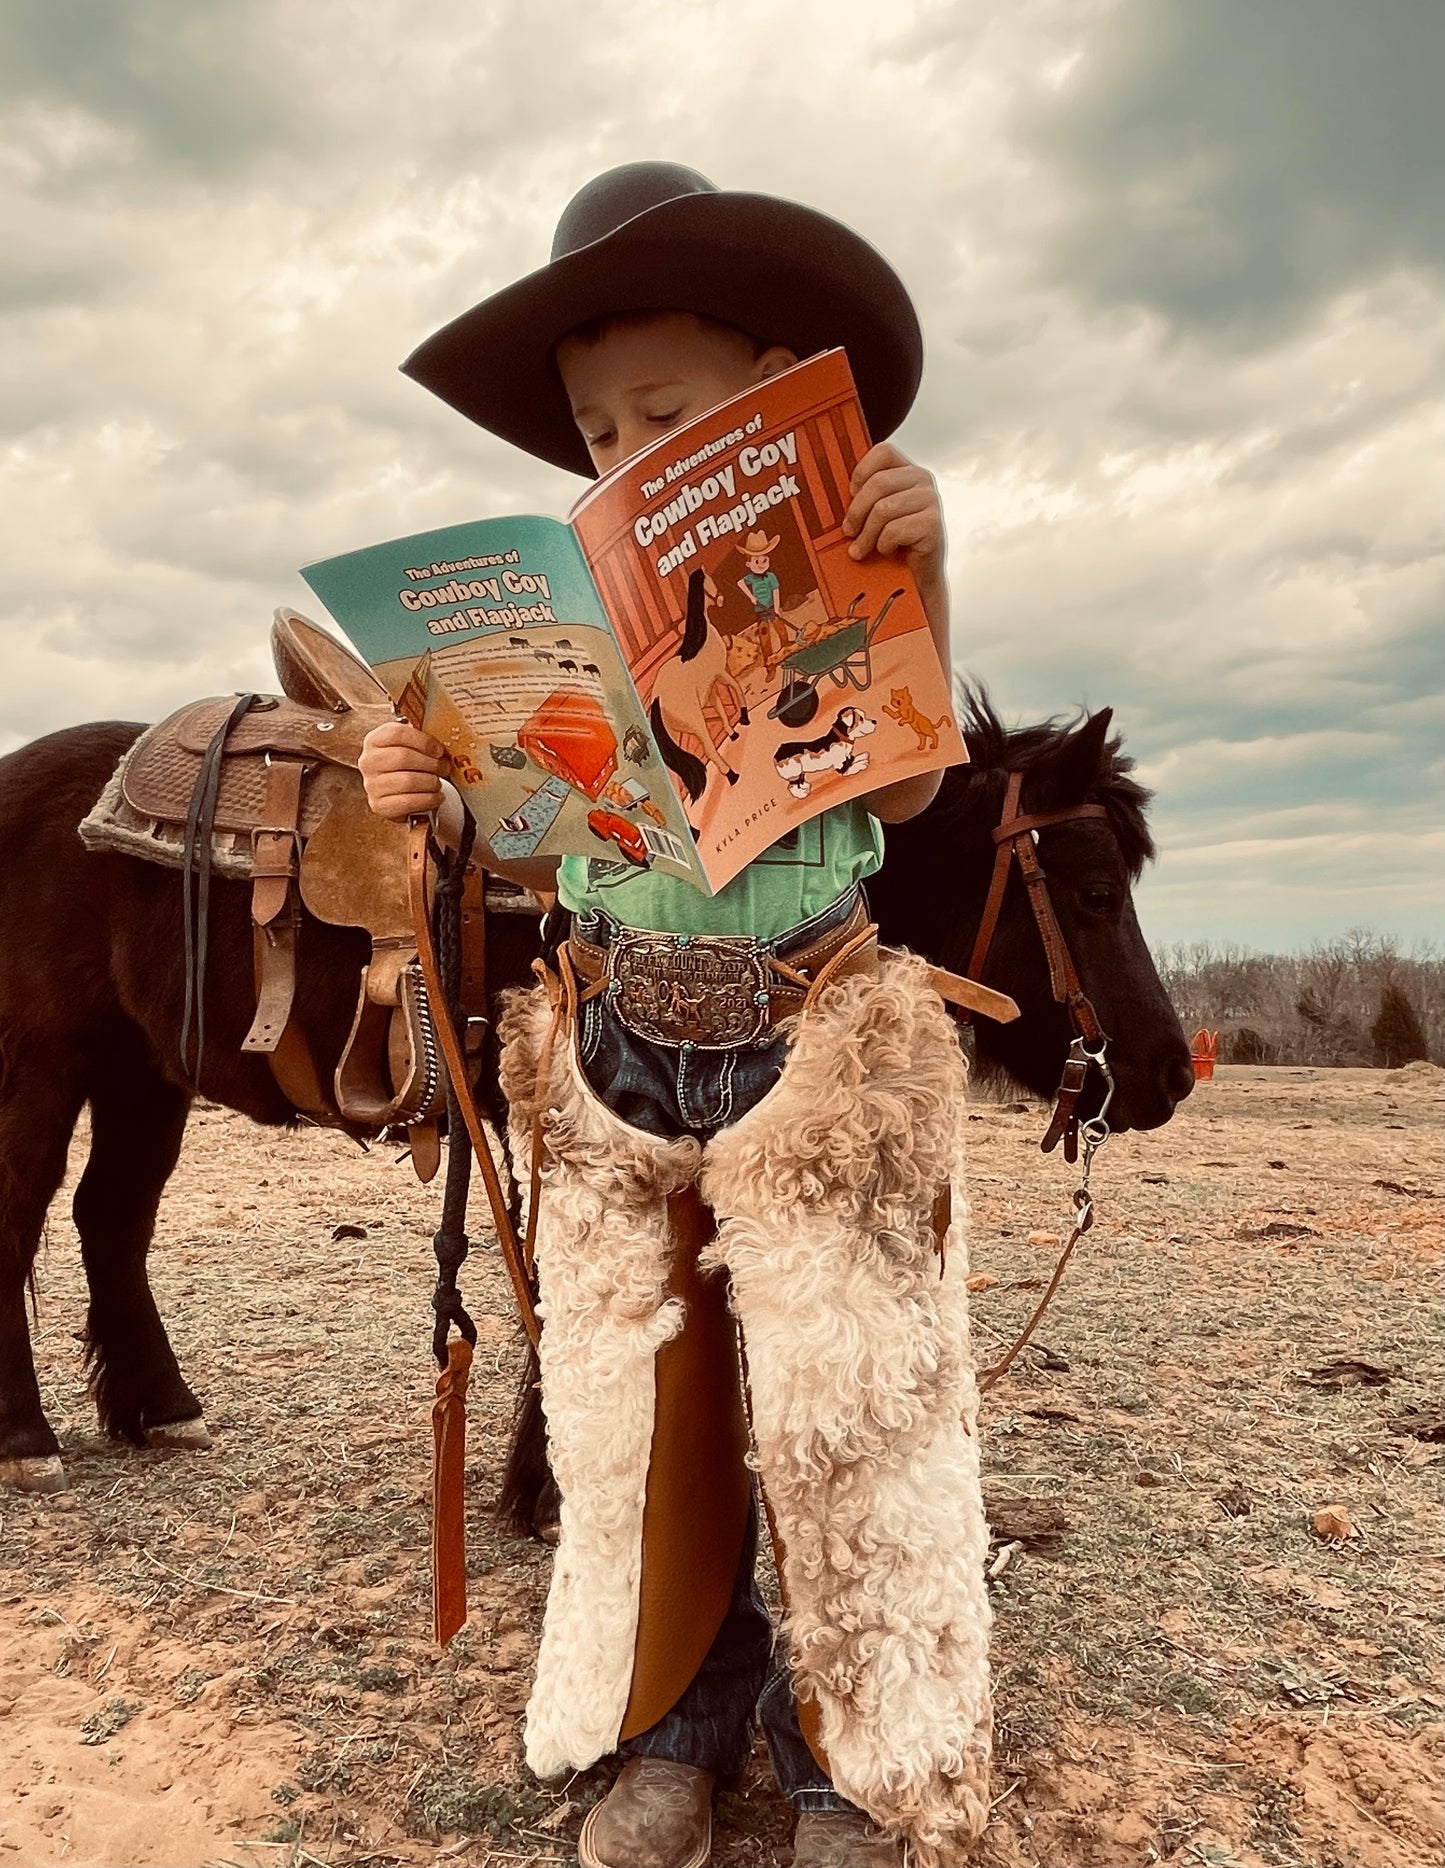 Cowboy Coy & Flapjack Kids Storybook